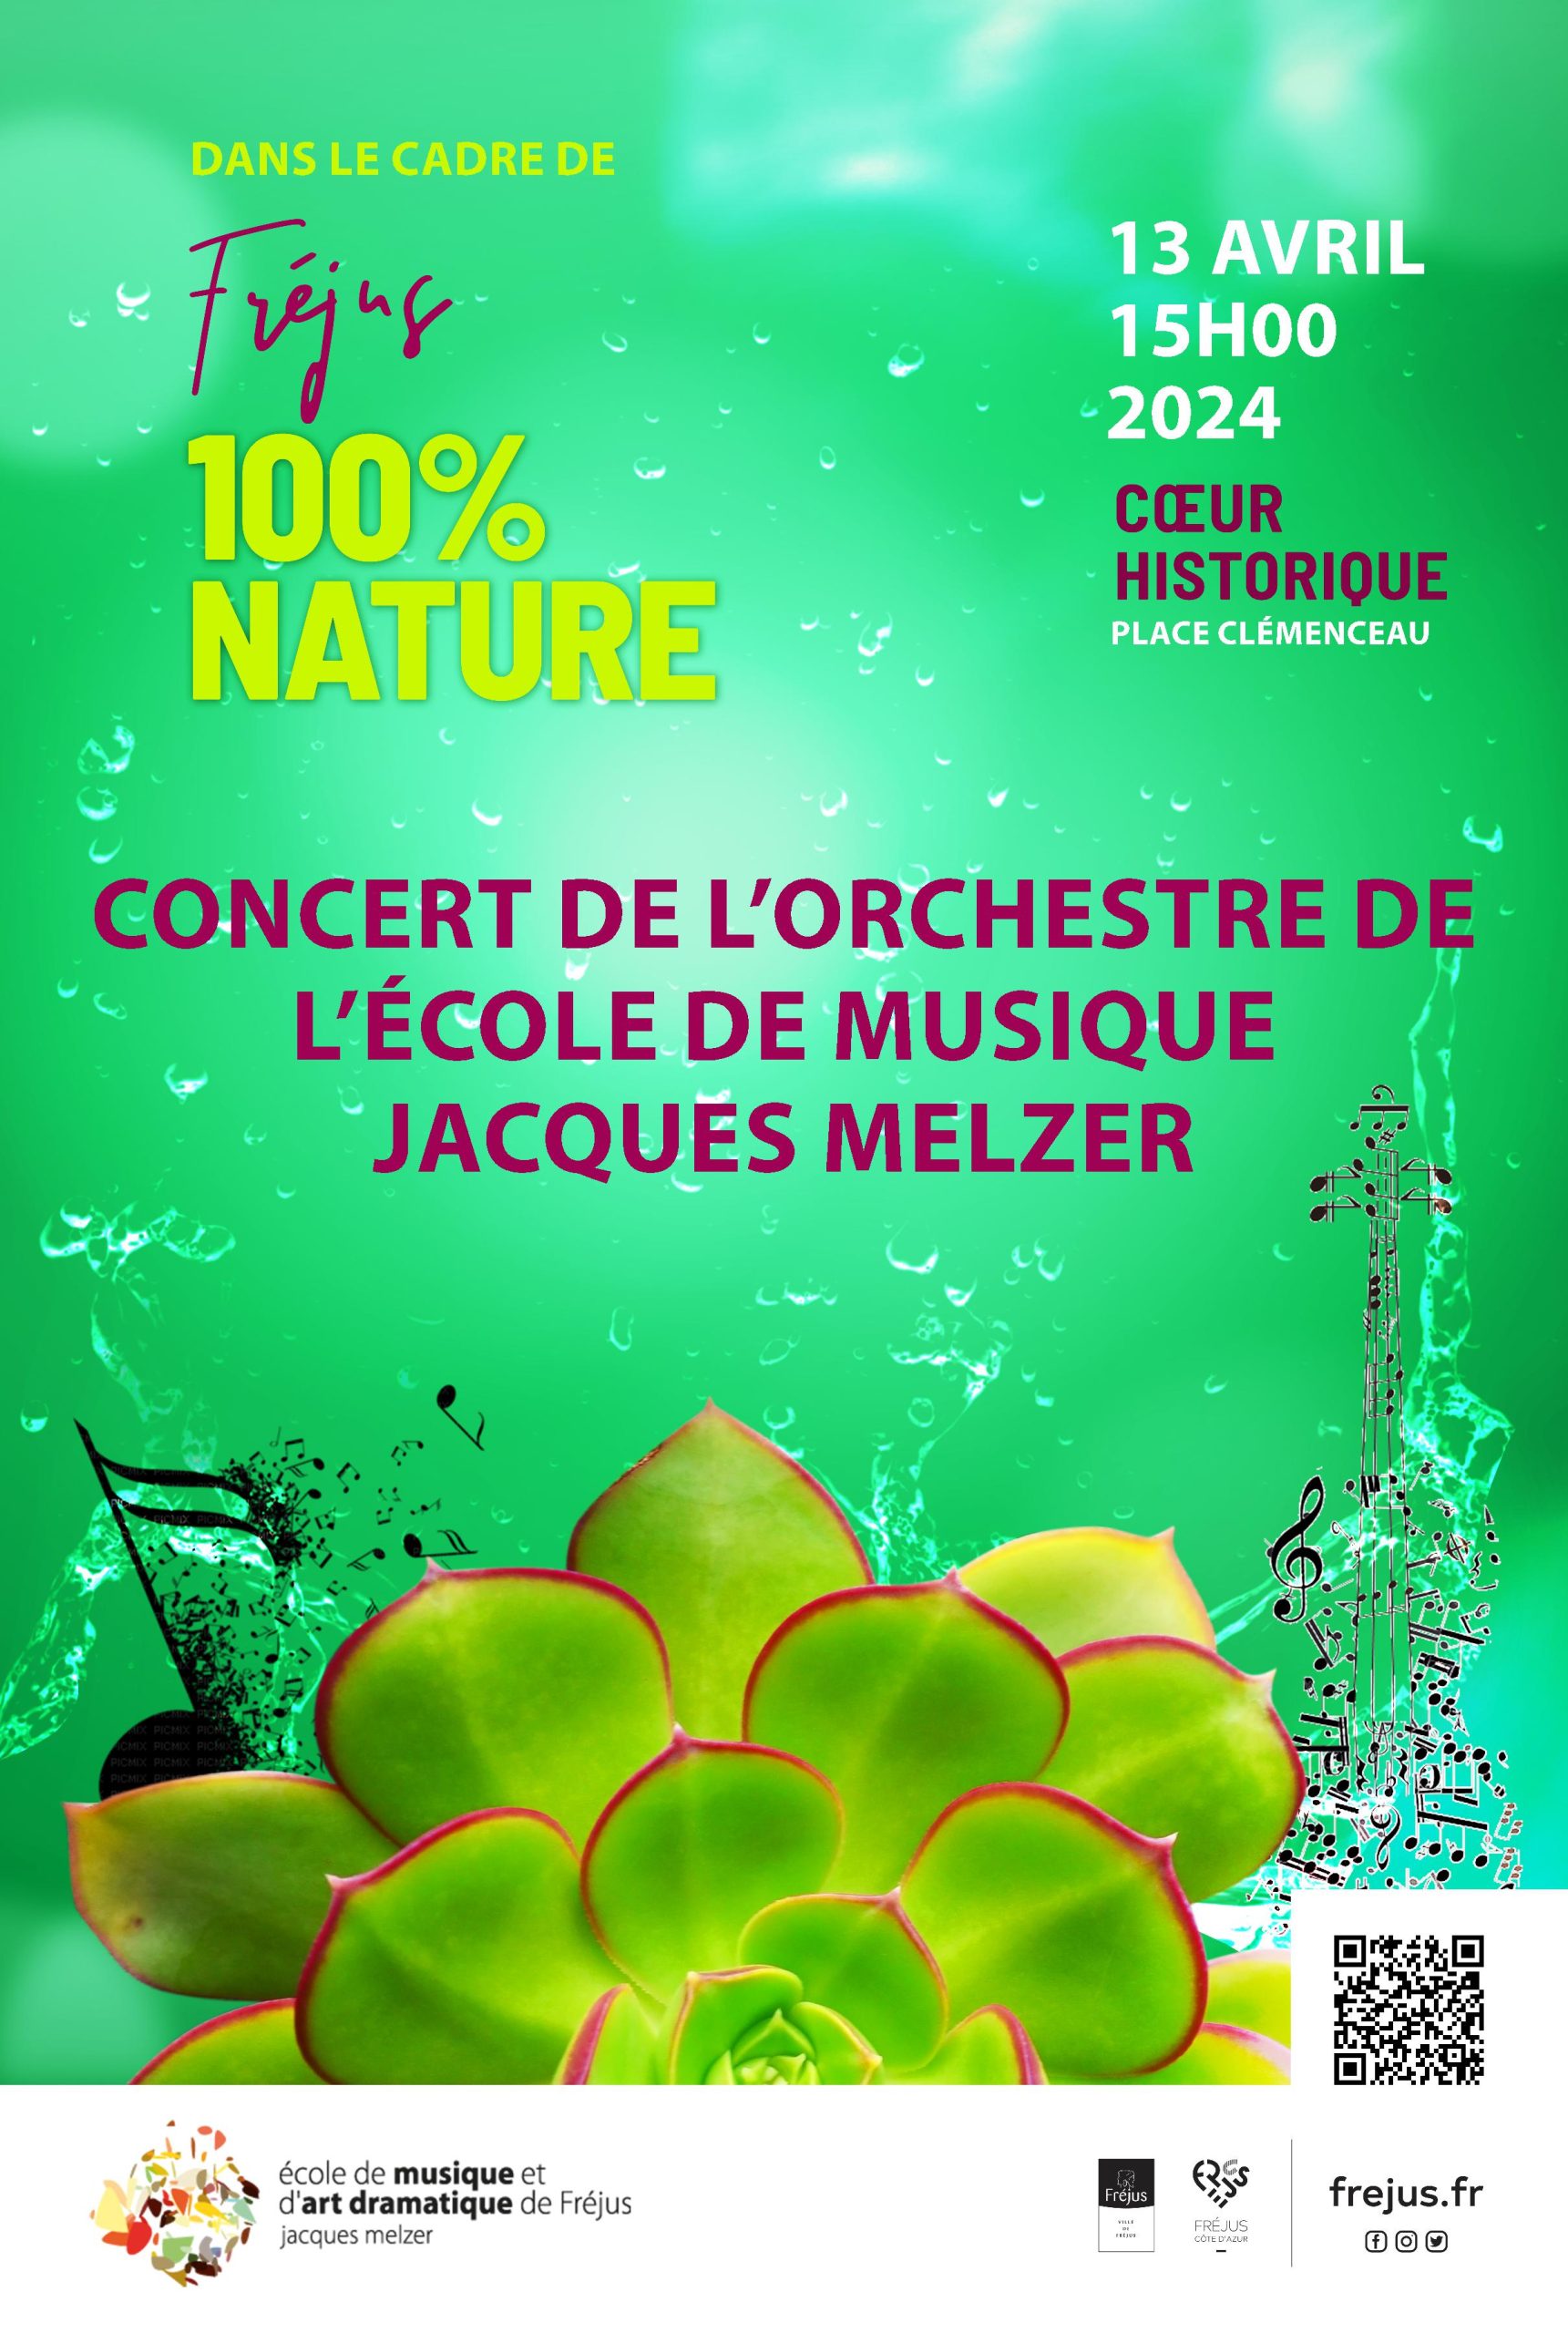 Visuel de l'évènement 100% Nature, fond vert plante succulente. Concert de l'orchestre 13 avril 2024